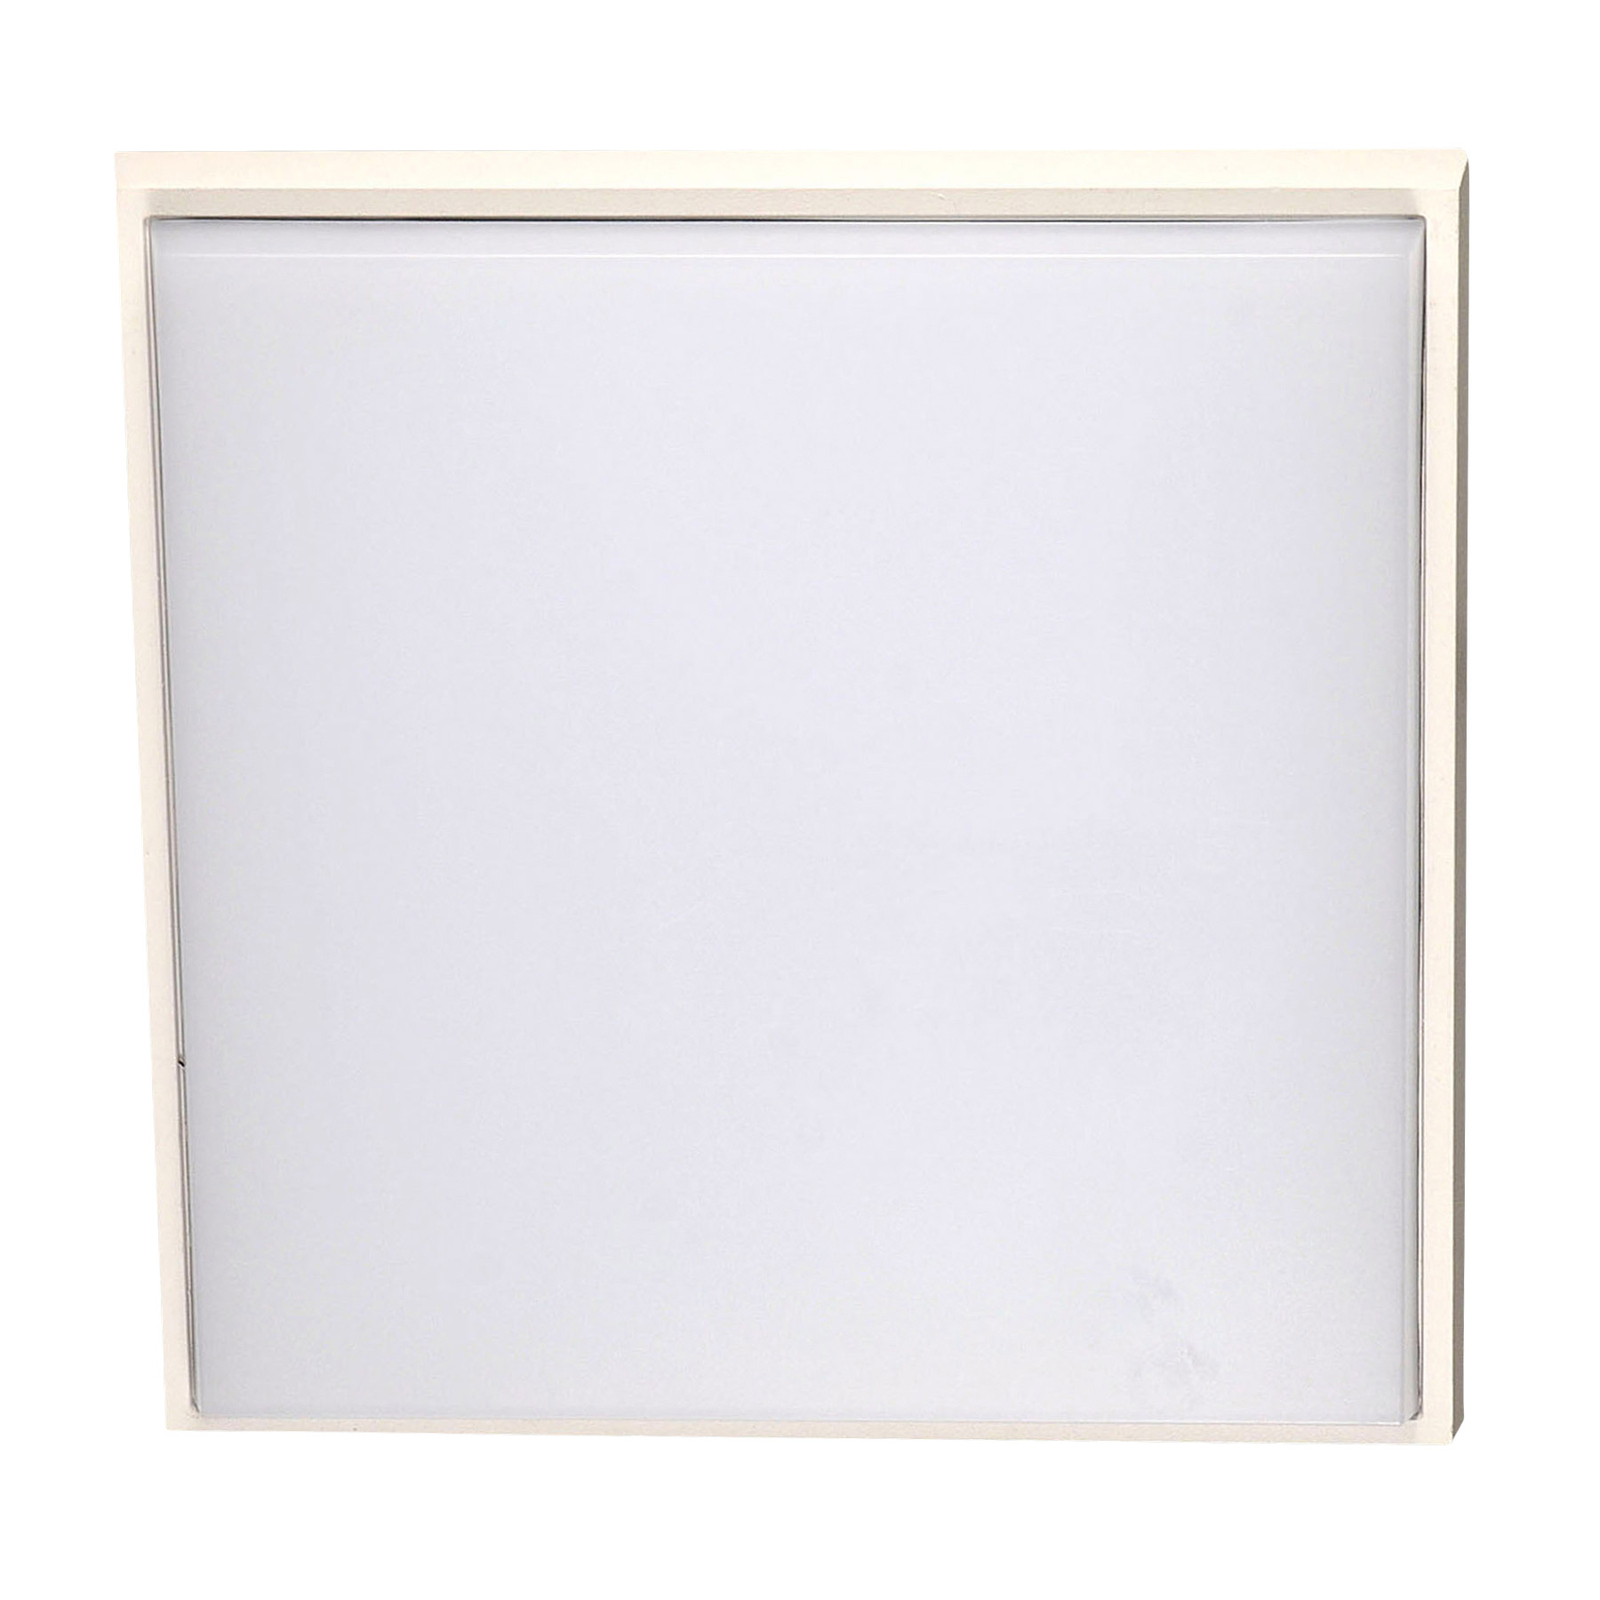 LED utendørs taklampe Desdy, 30 x 30 cm, hvit